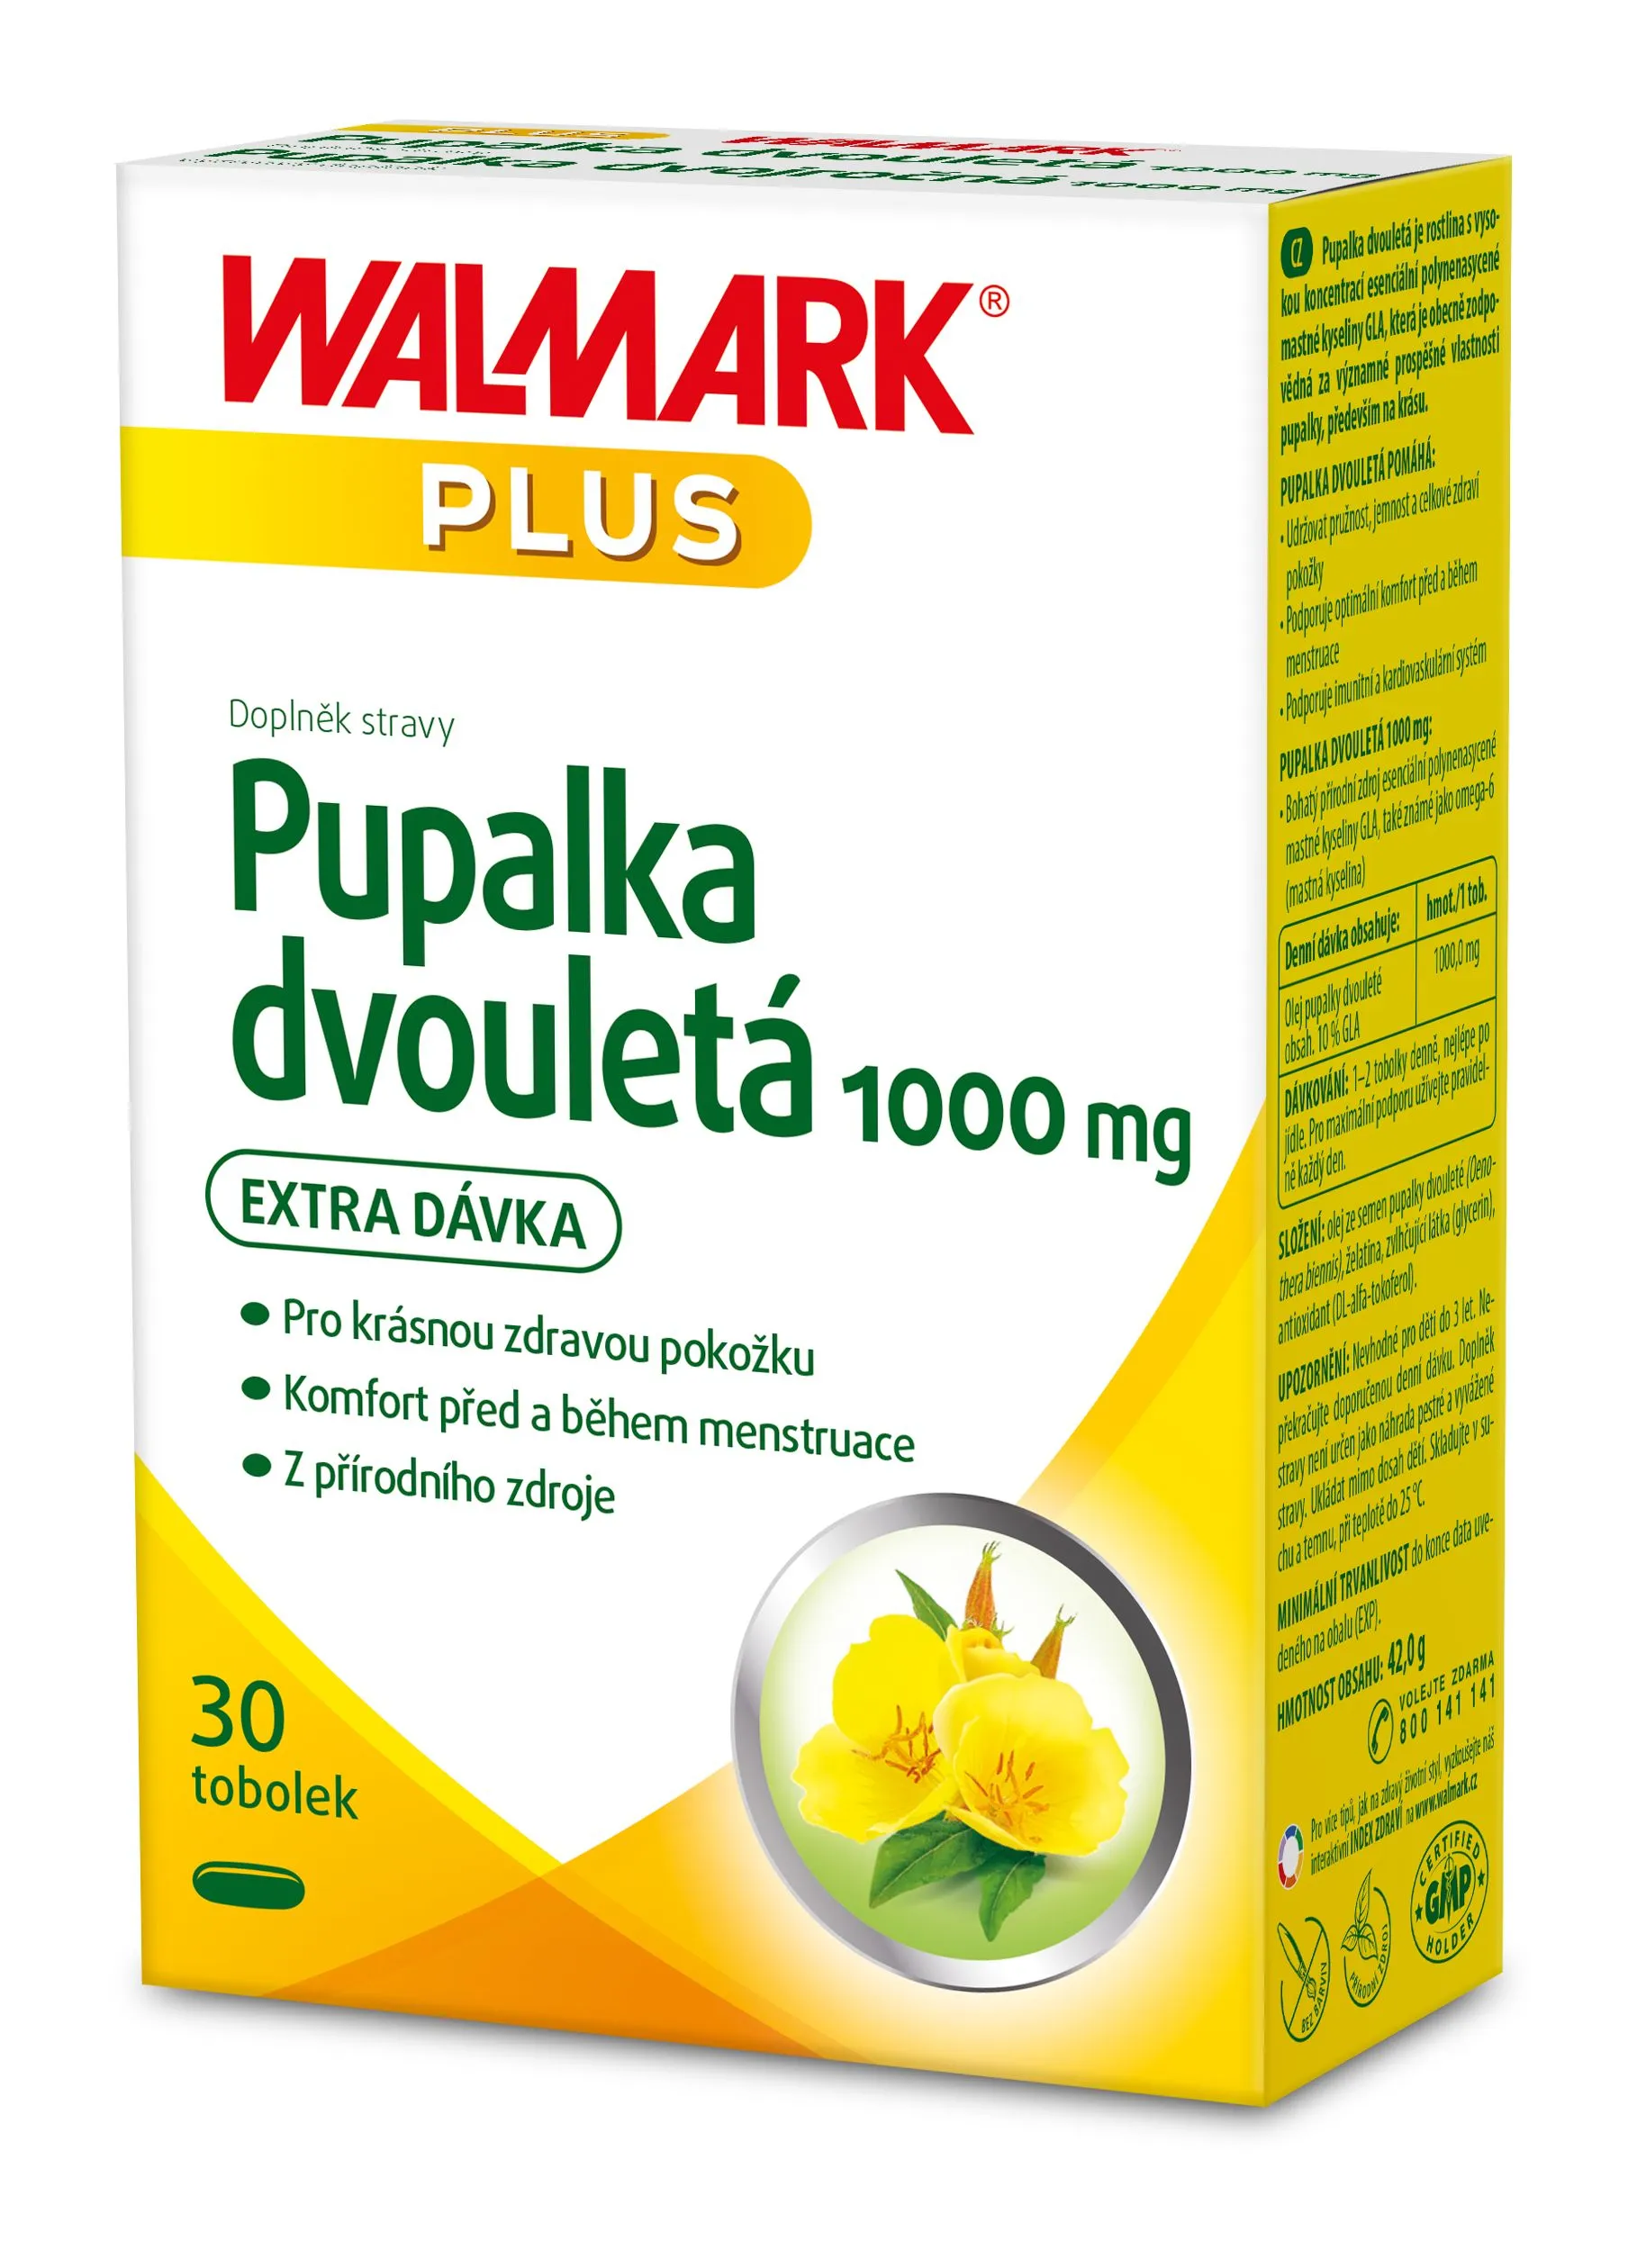 Walmark Pupalka dvouletá 1000 mg 30 tobolek